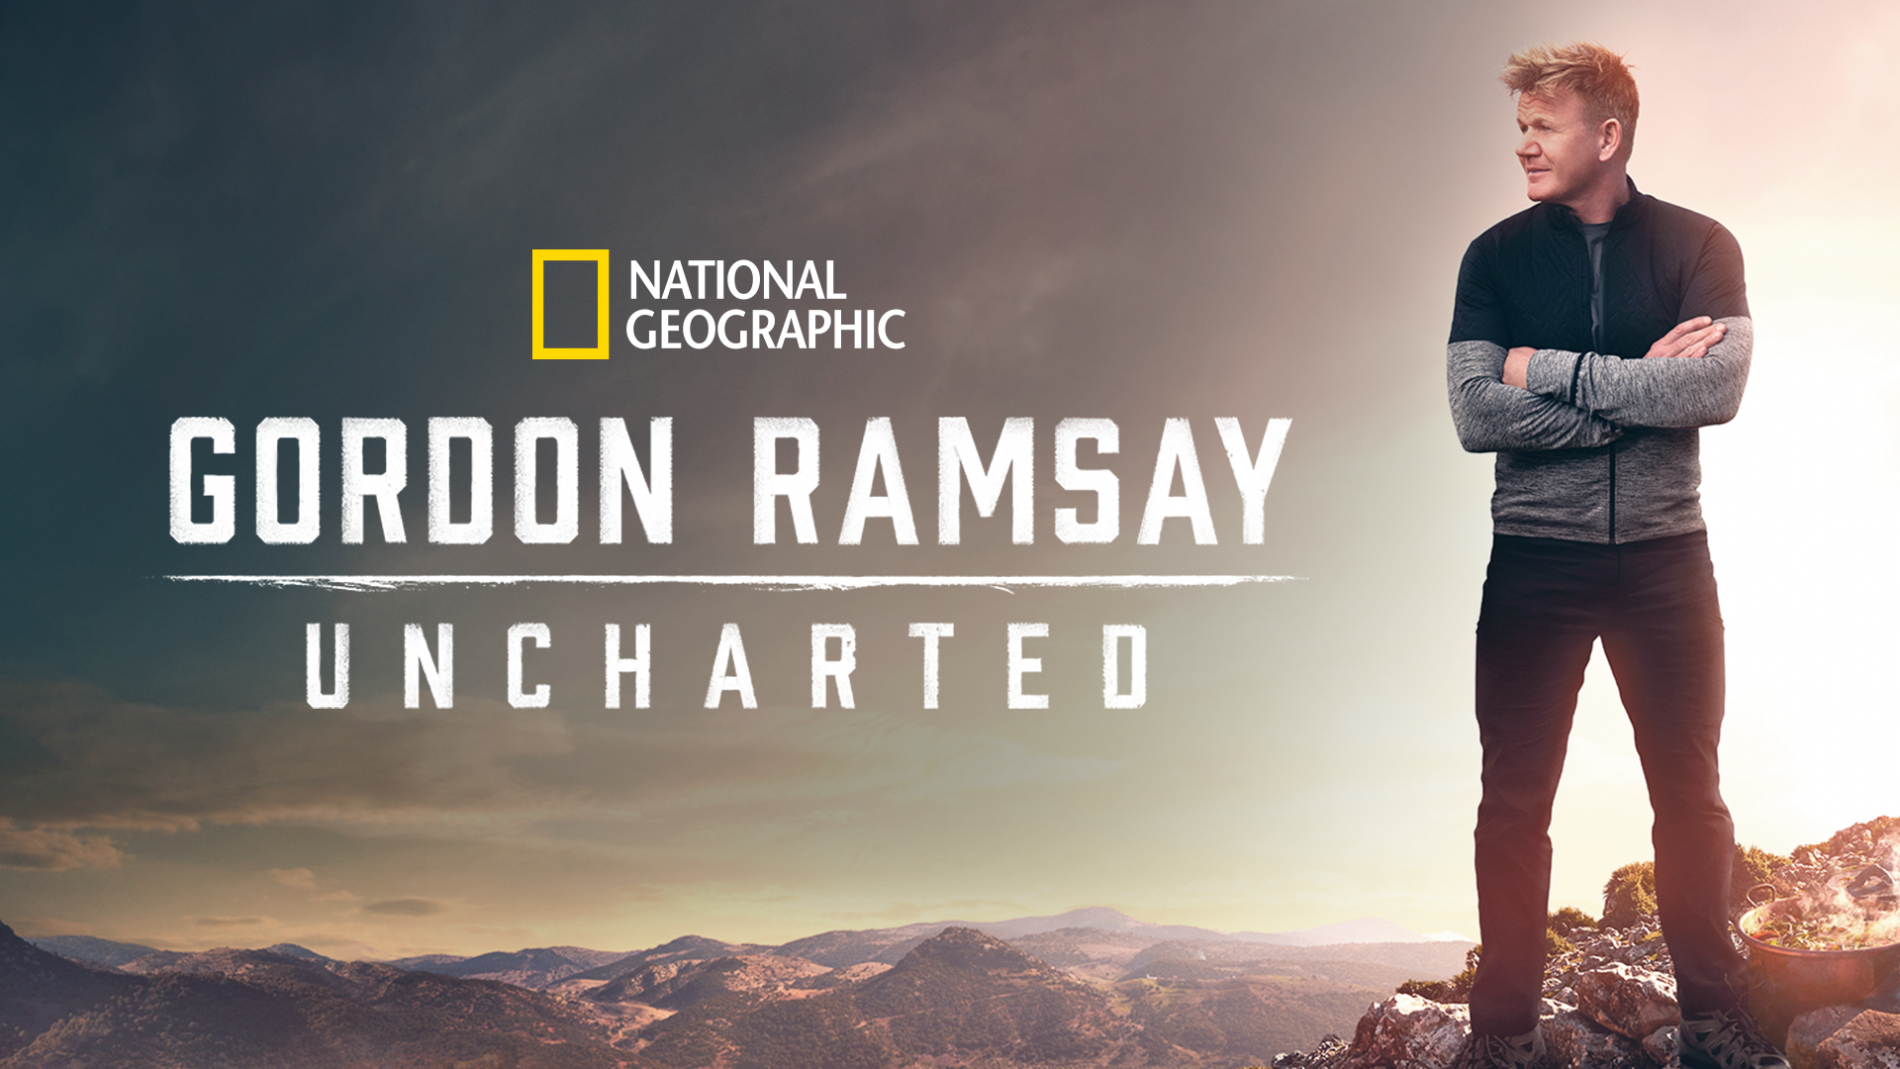 Gordon ramsay uncharted season 2